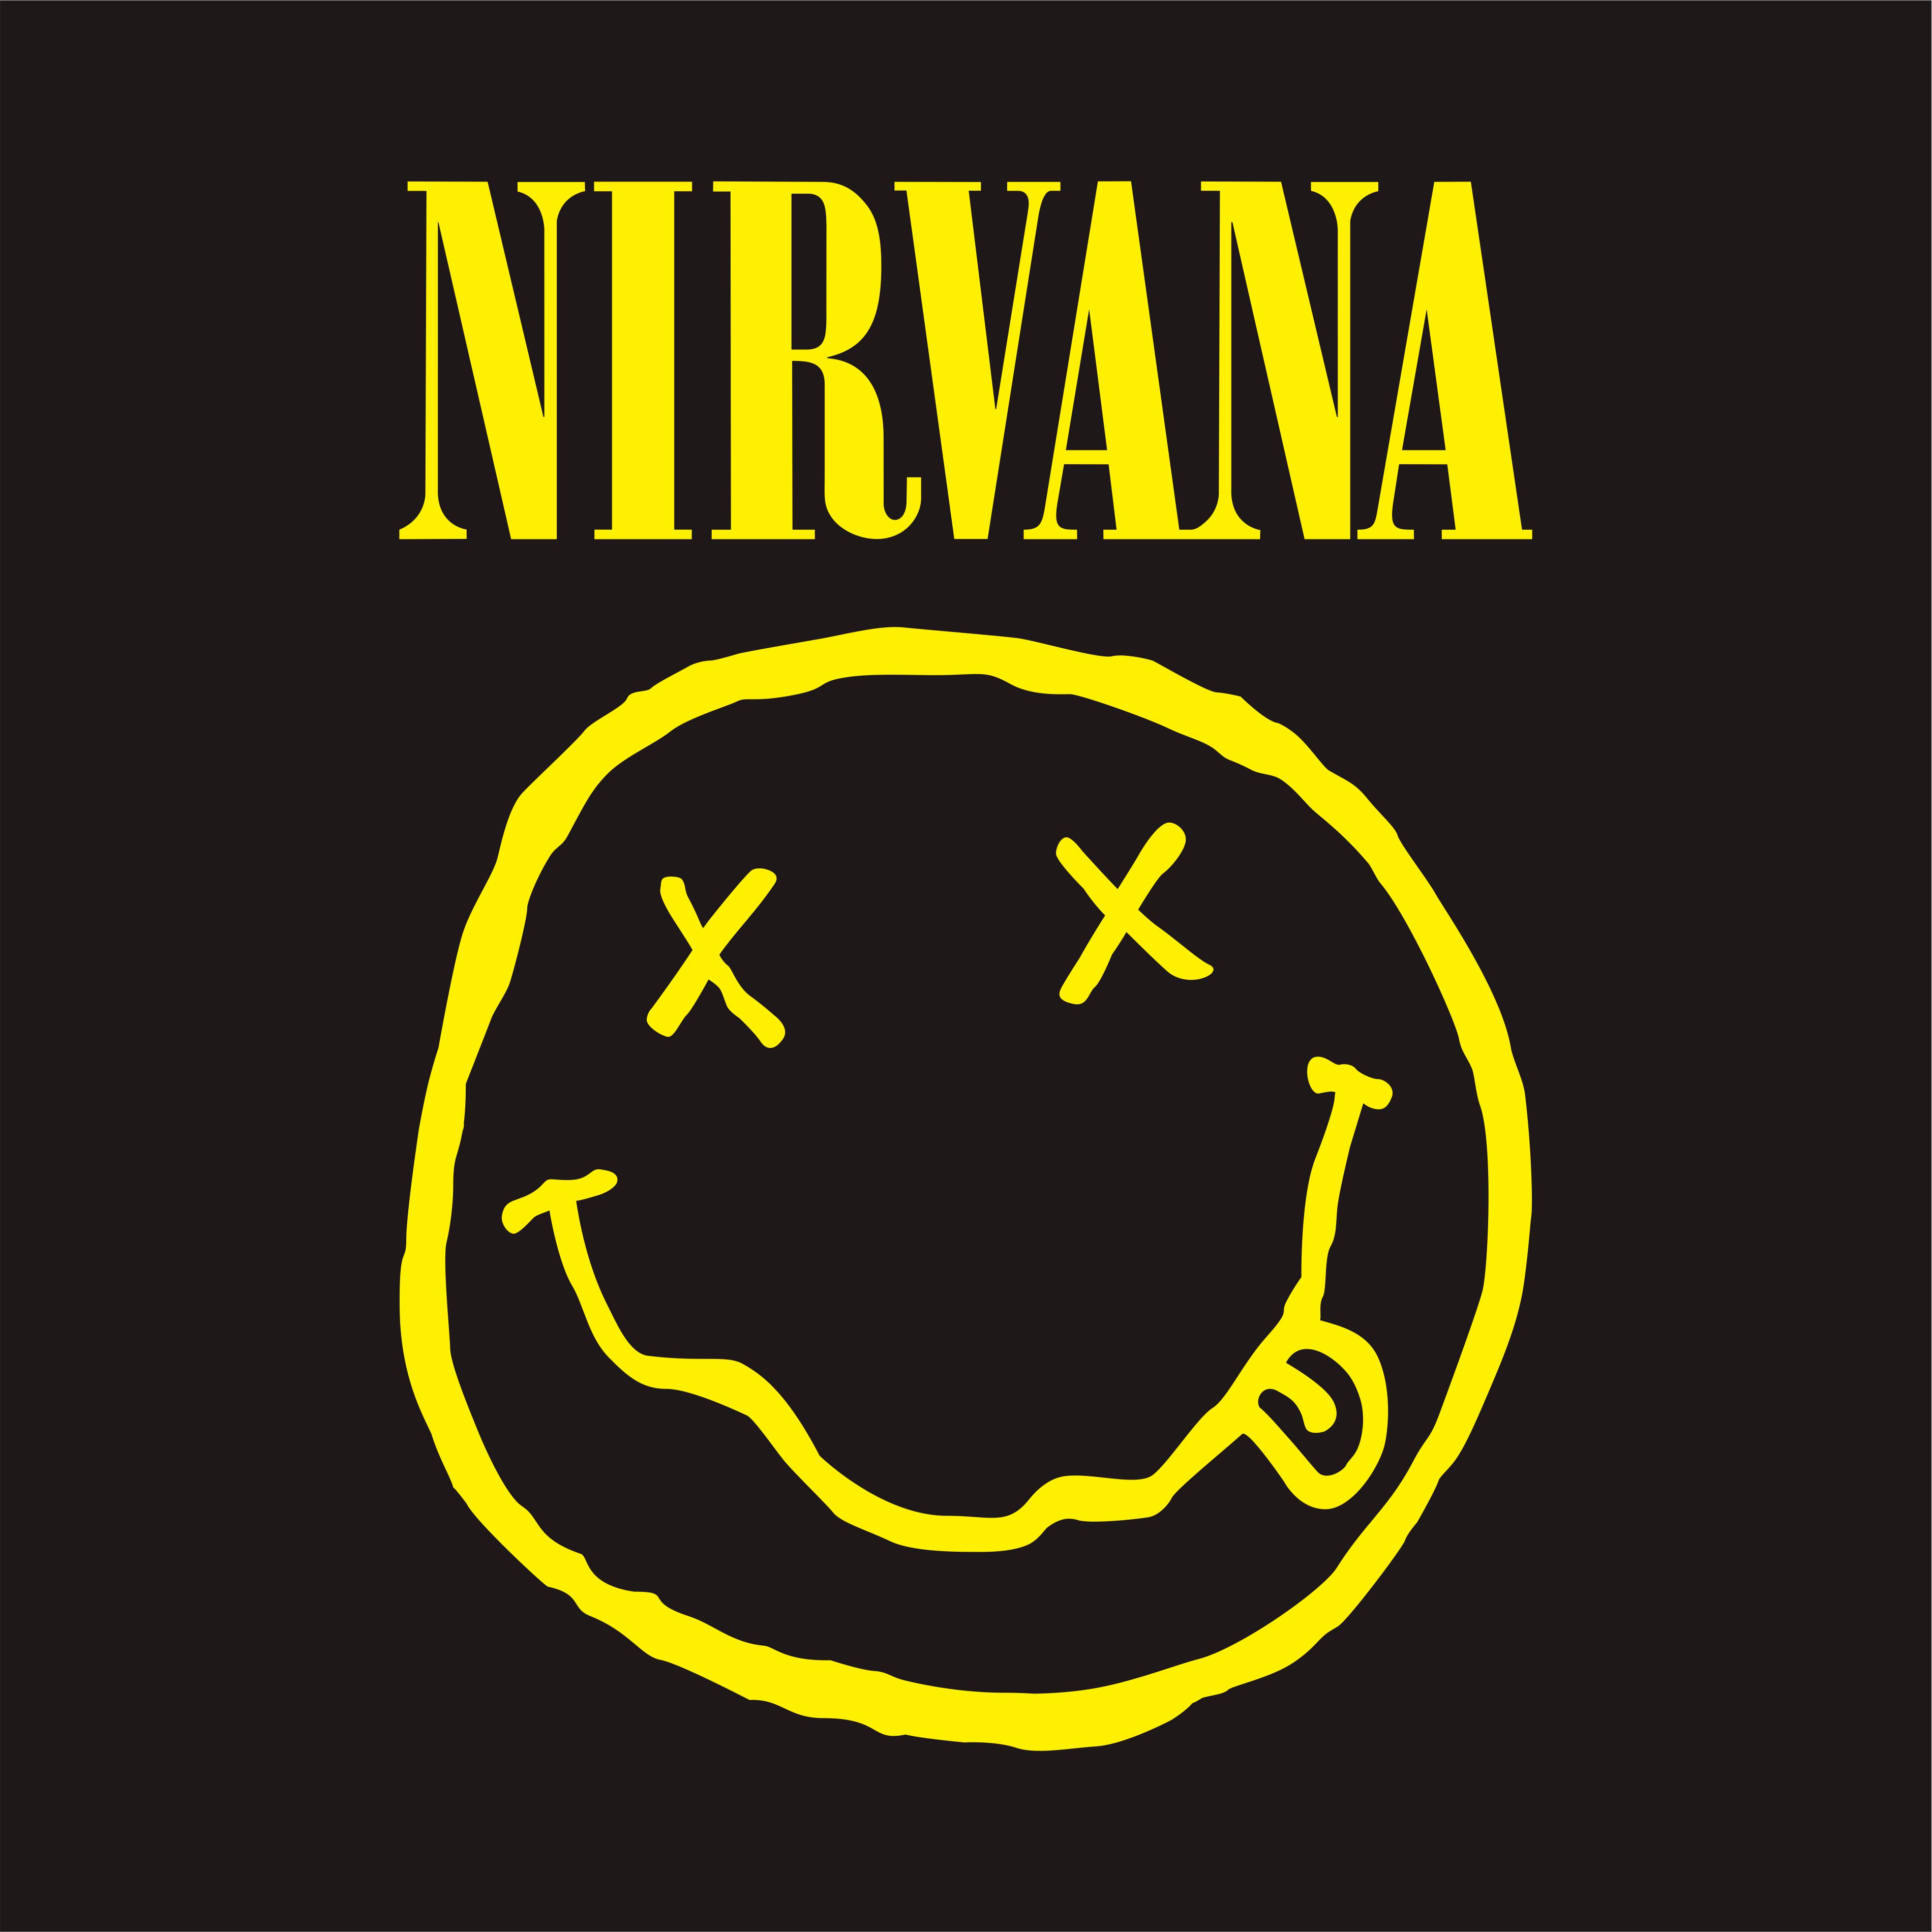 Download Nirvana Logos